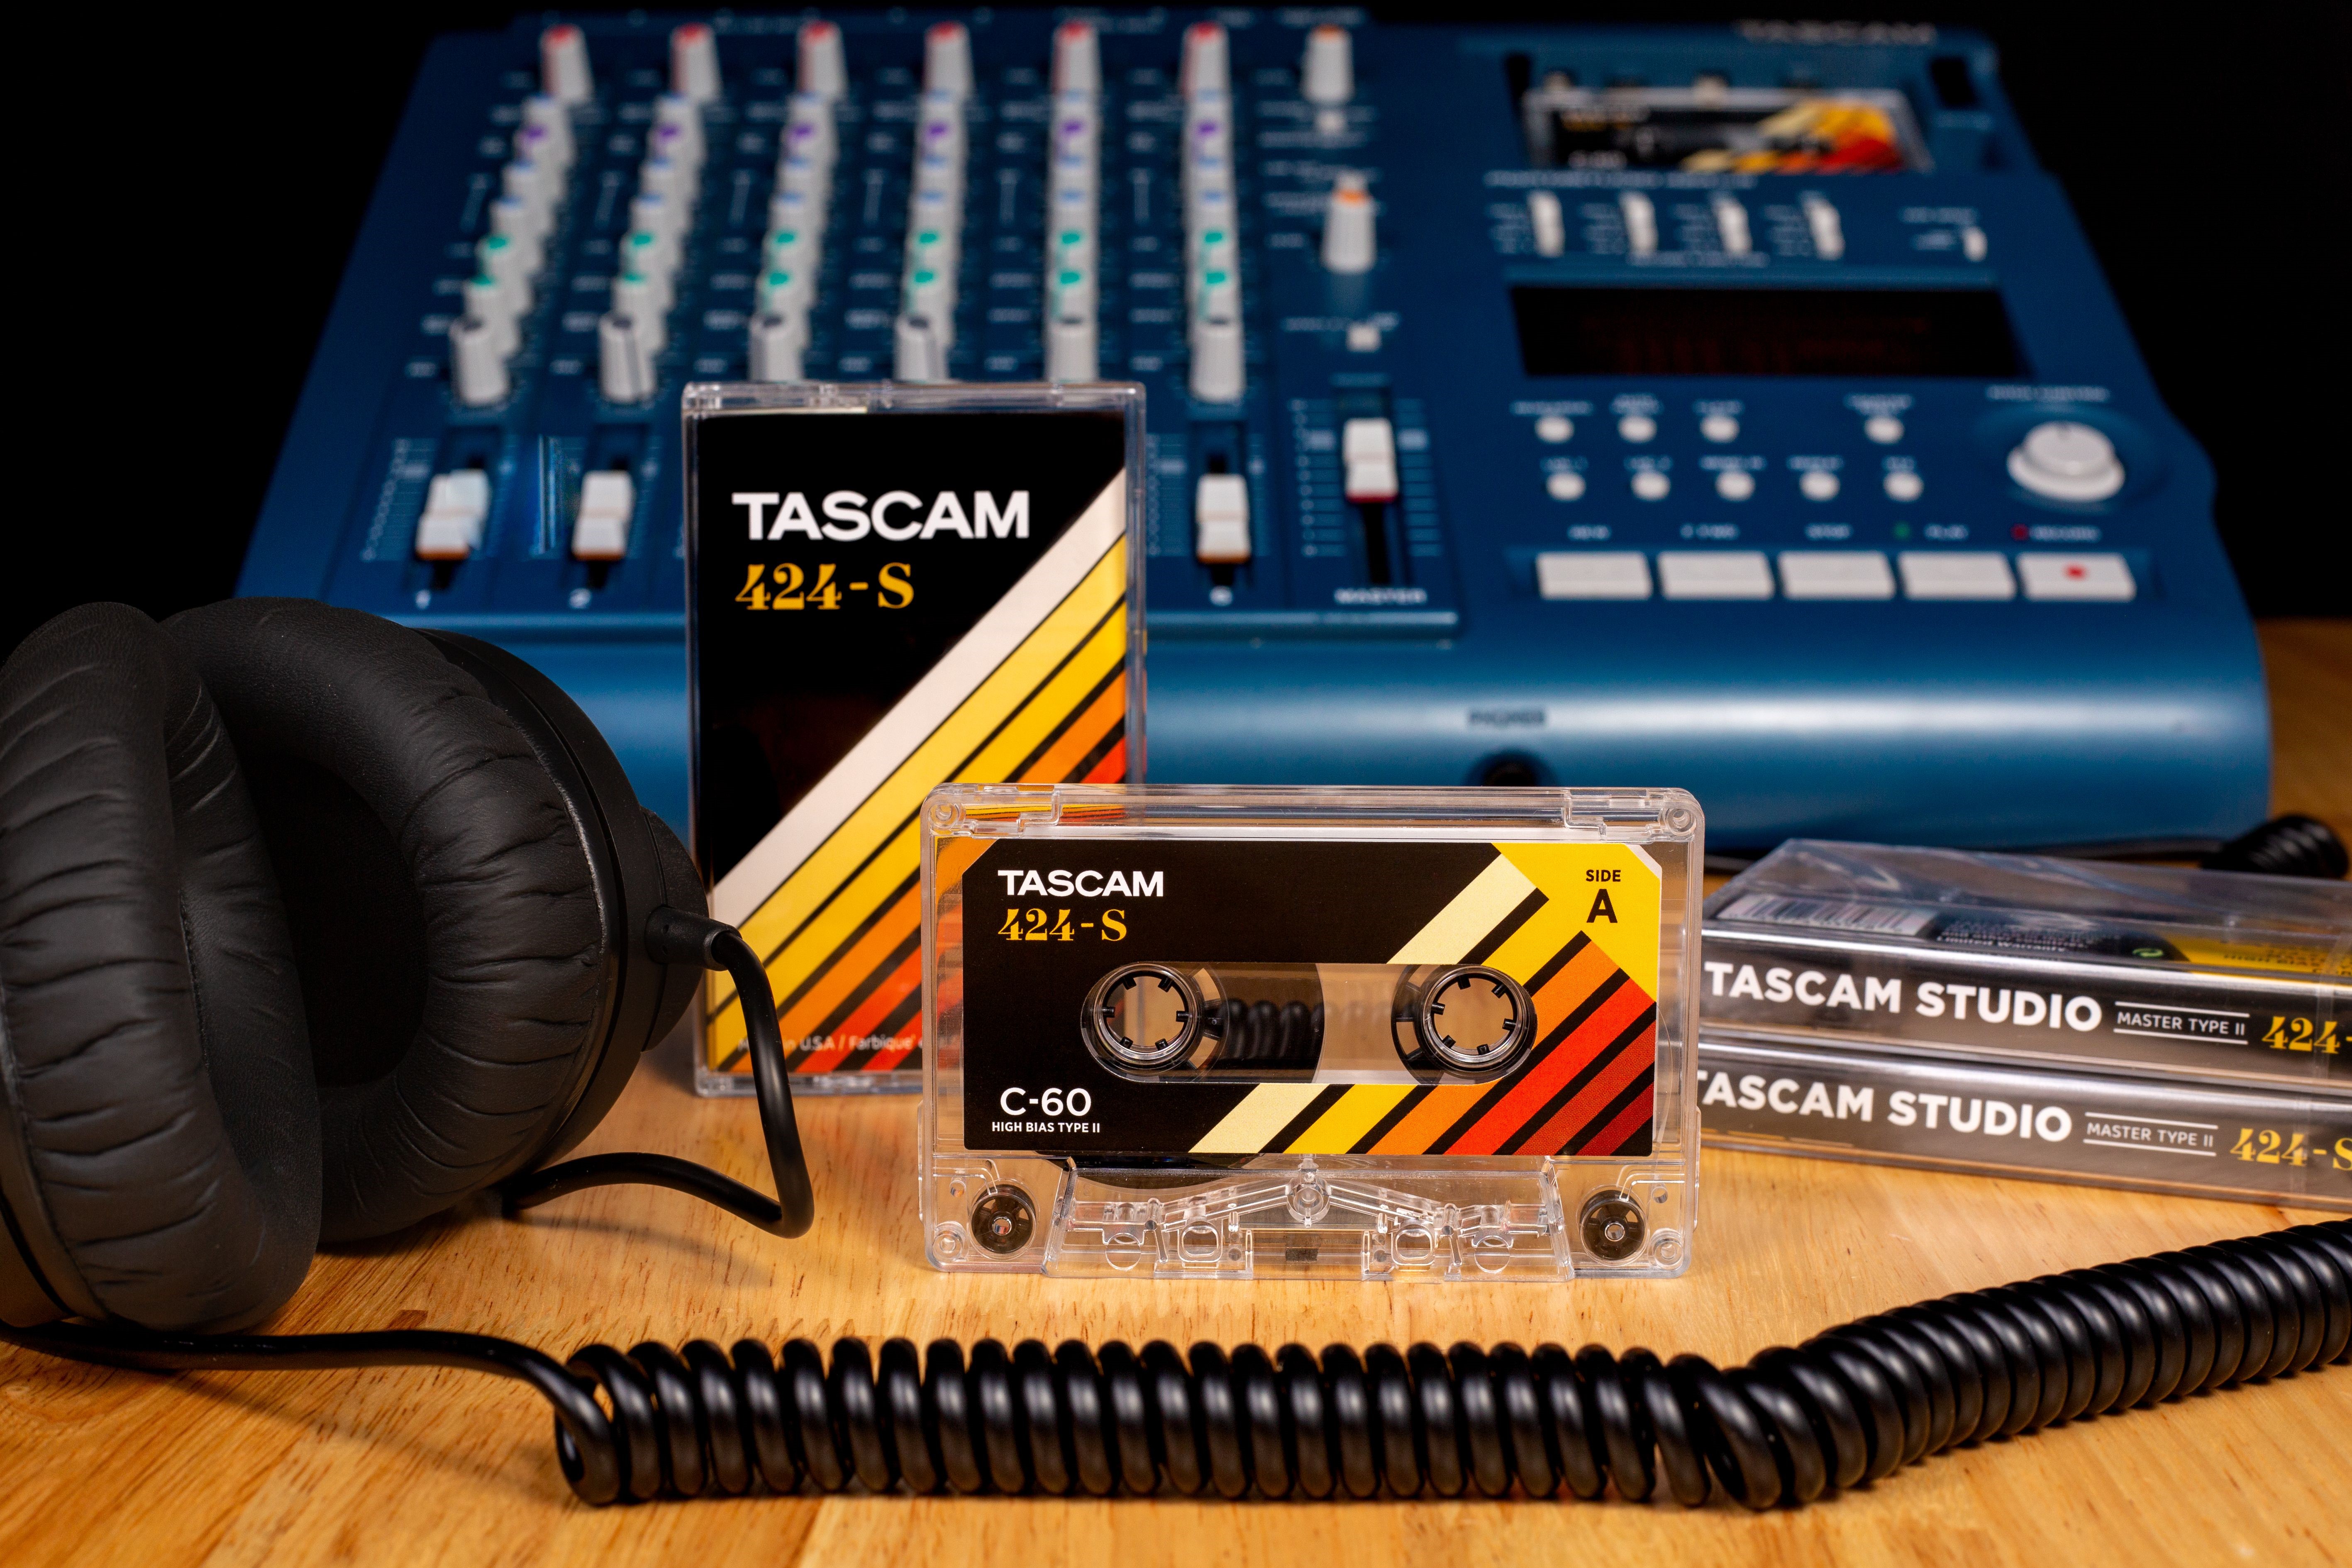 424-S Studio Cassette